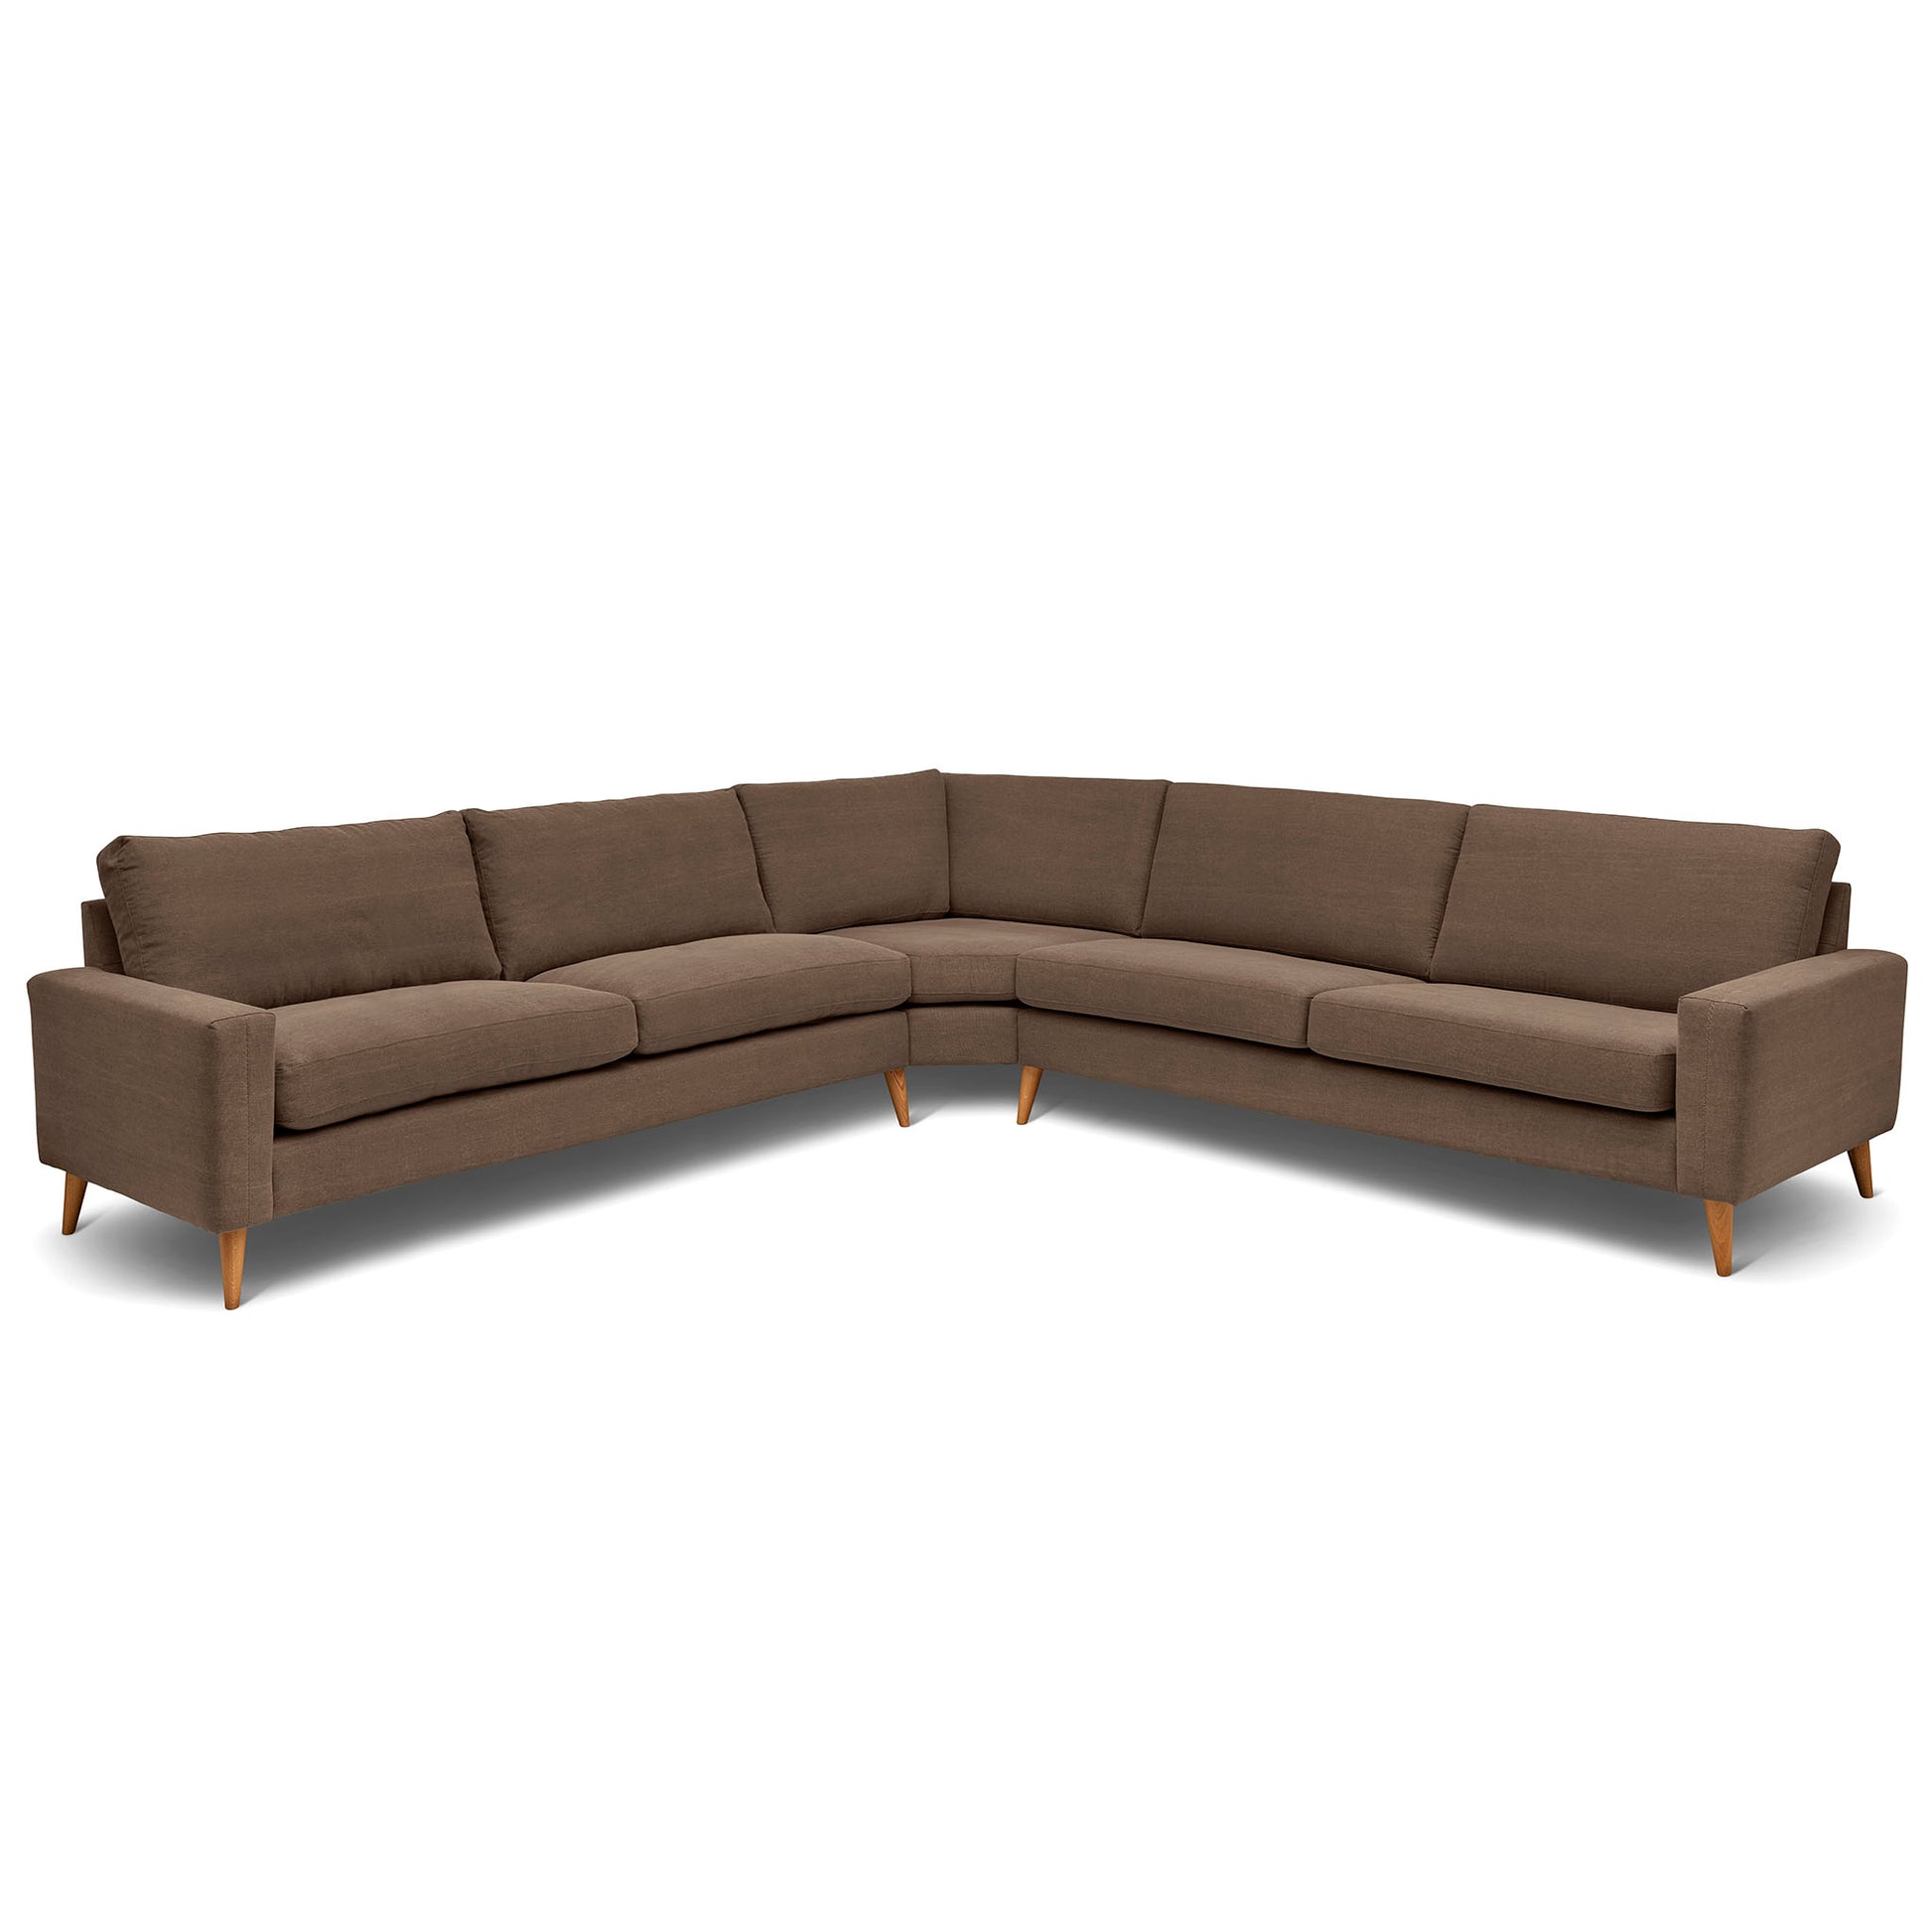 Stor kvadratisk hörnsoffa med måttet 321x321 cm. Sittvänlig soffa för äldre i brunt tyg